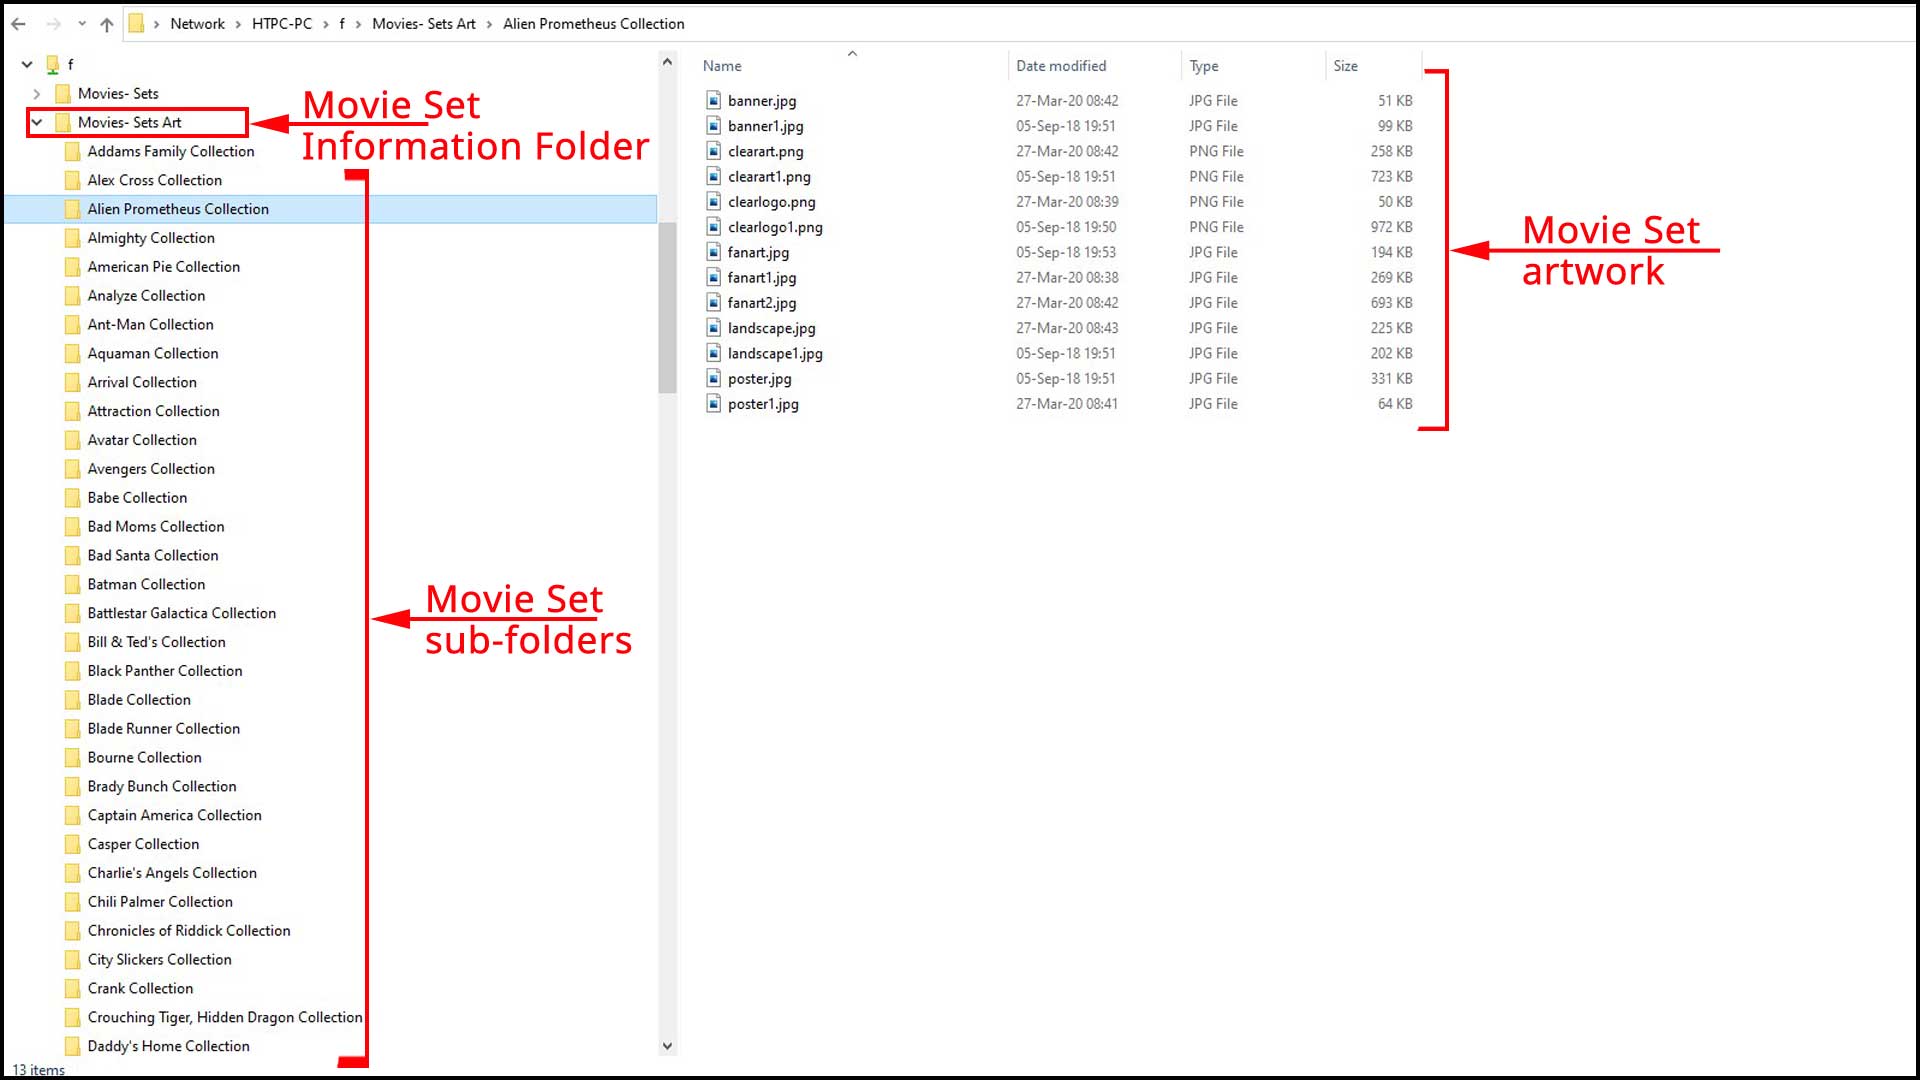 Folder structure and file naming for central movie set artwork folder